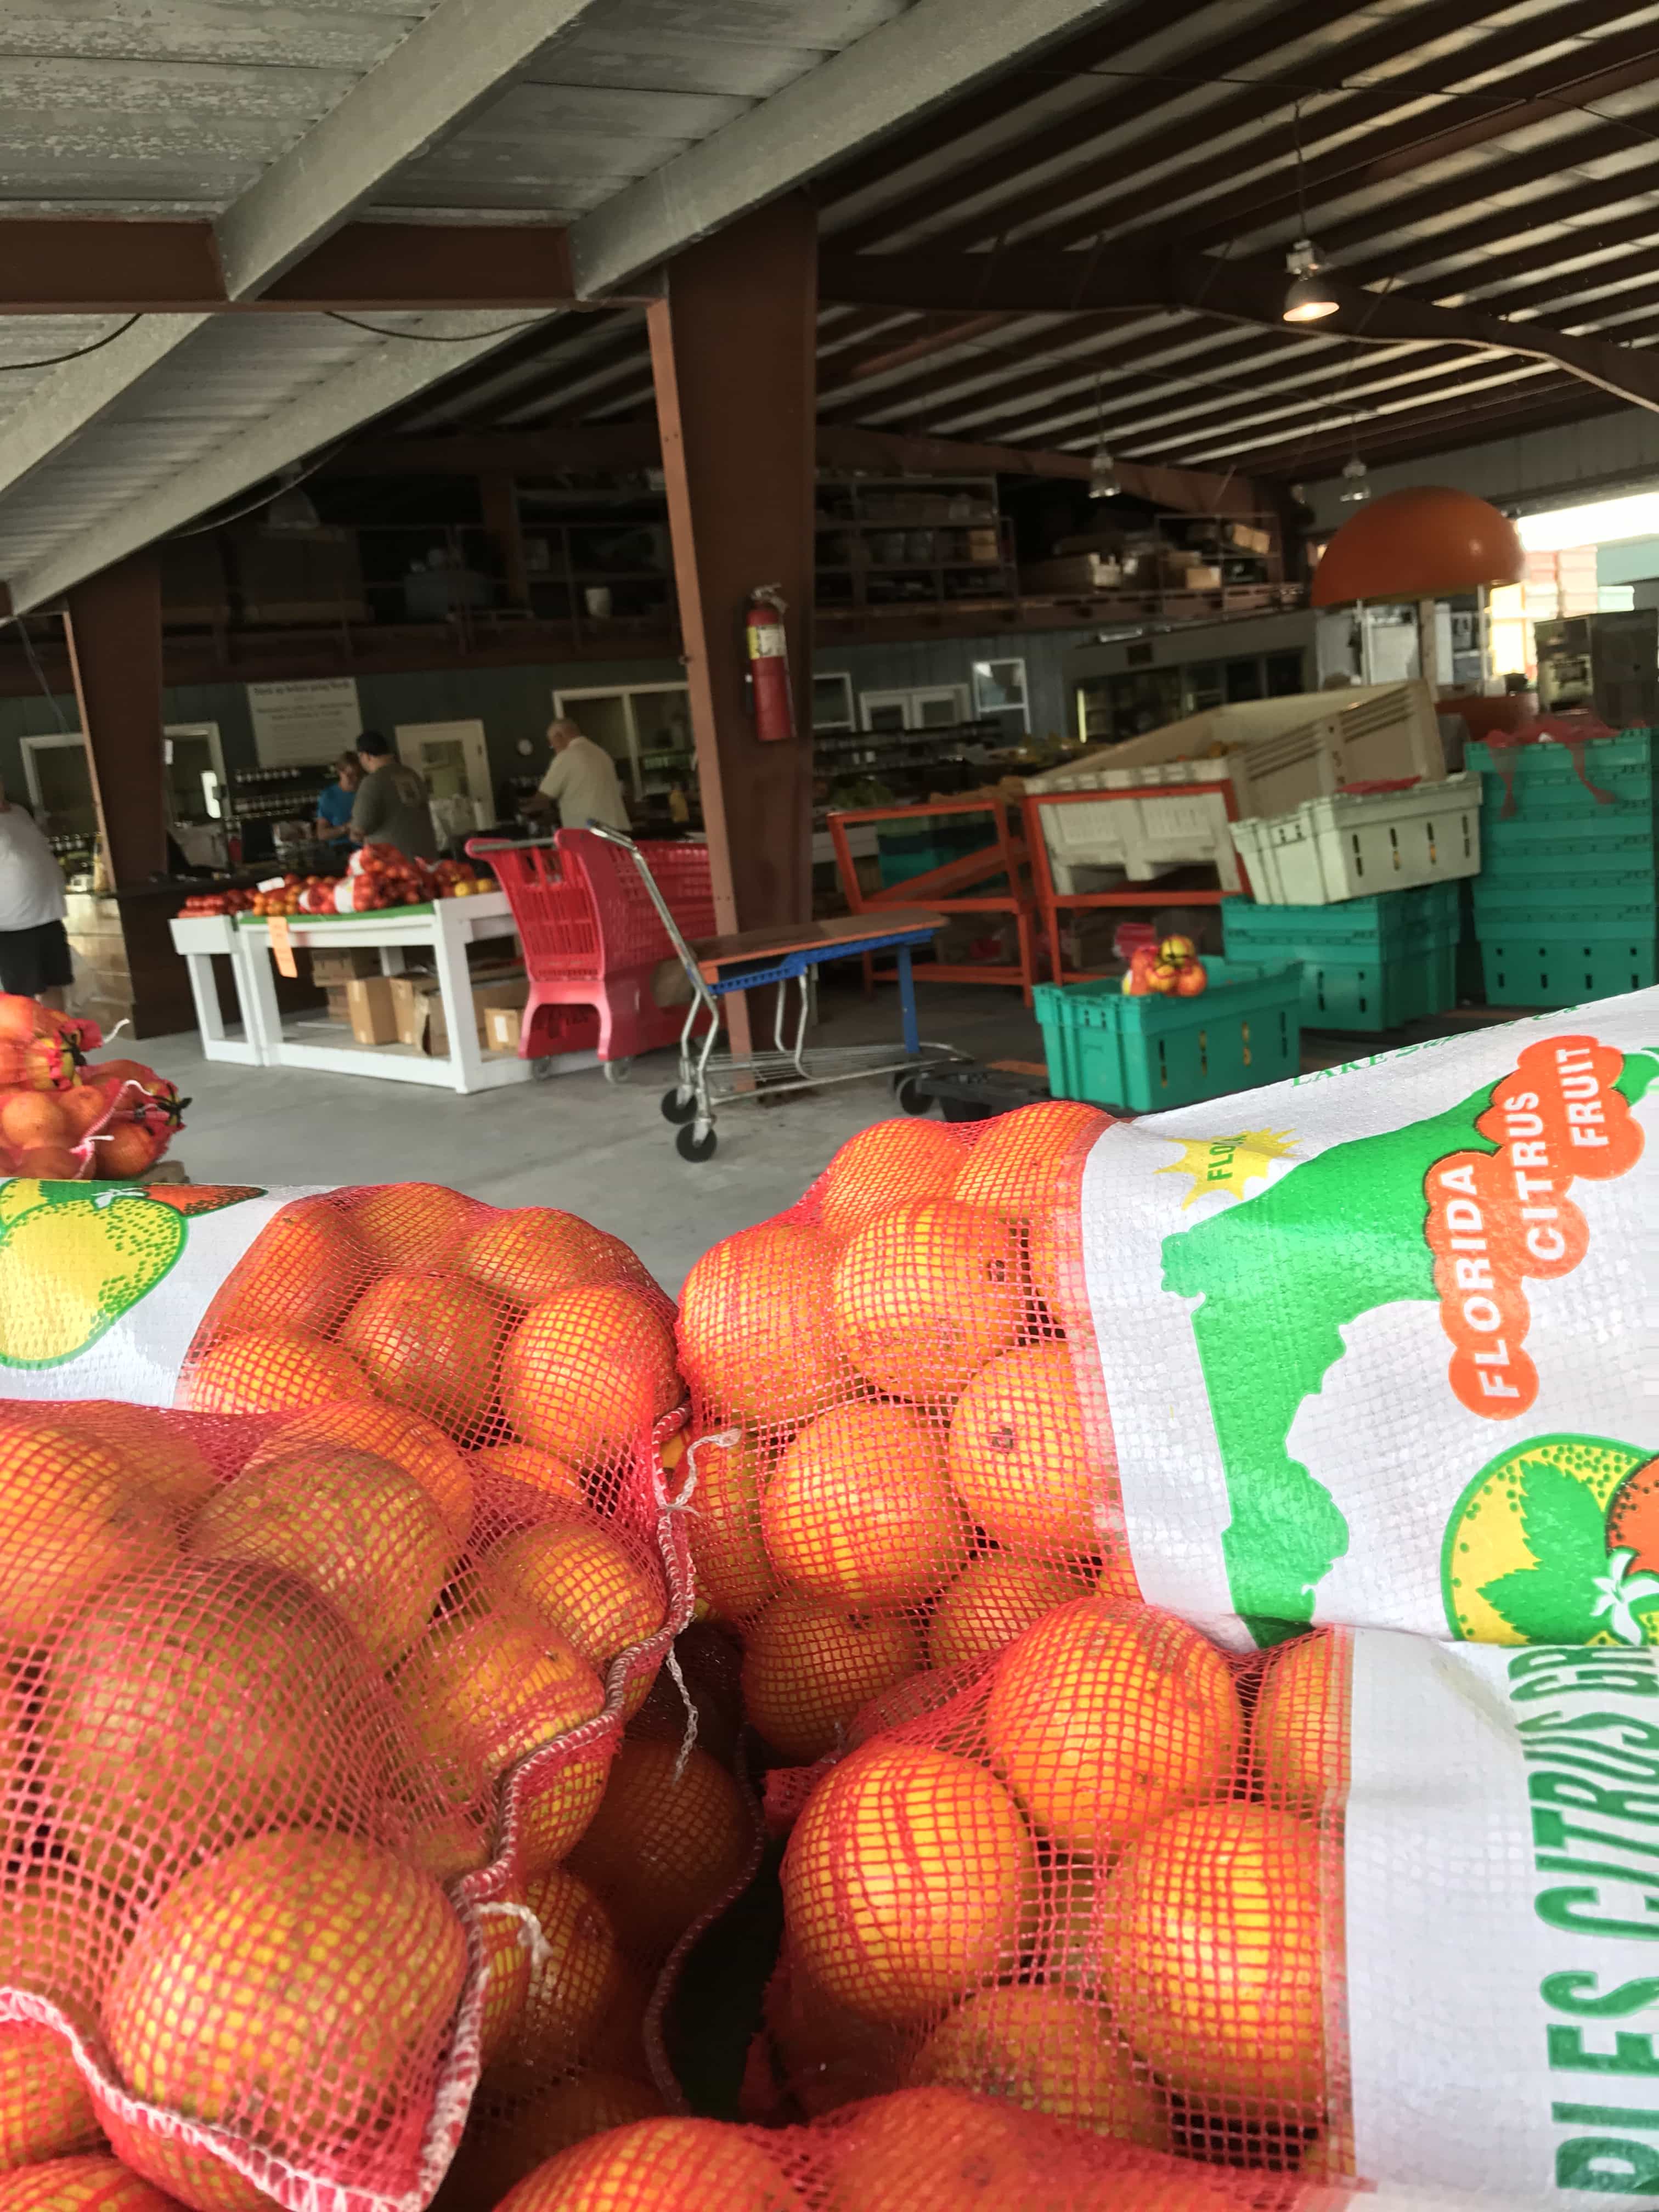 South Naples Citrus Grove Market